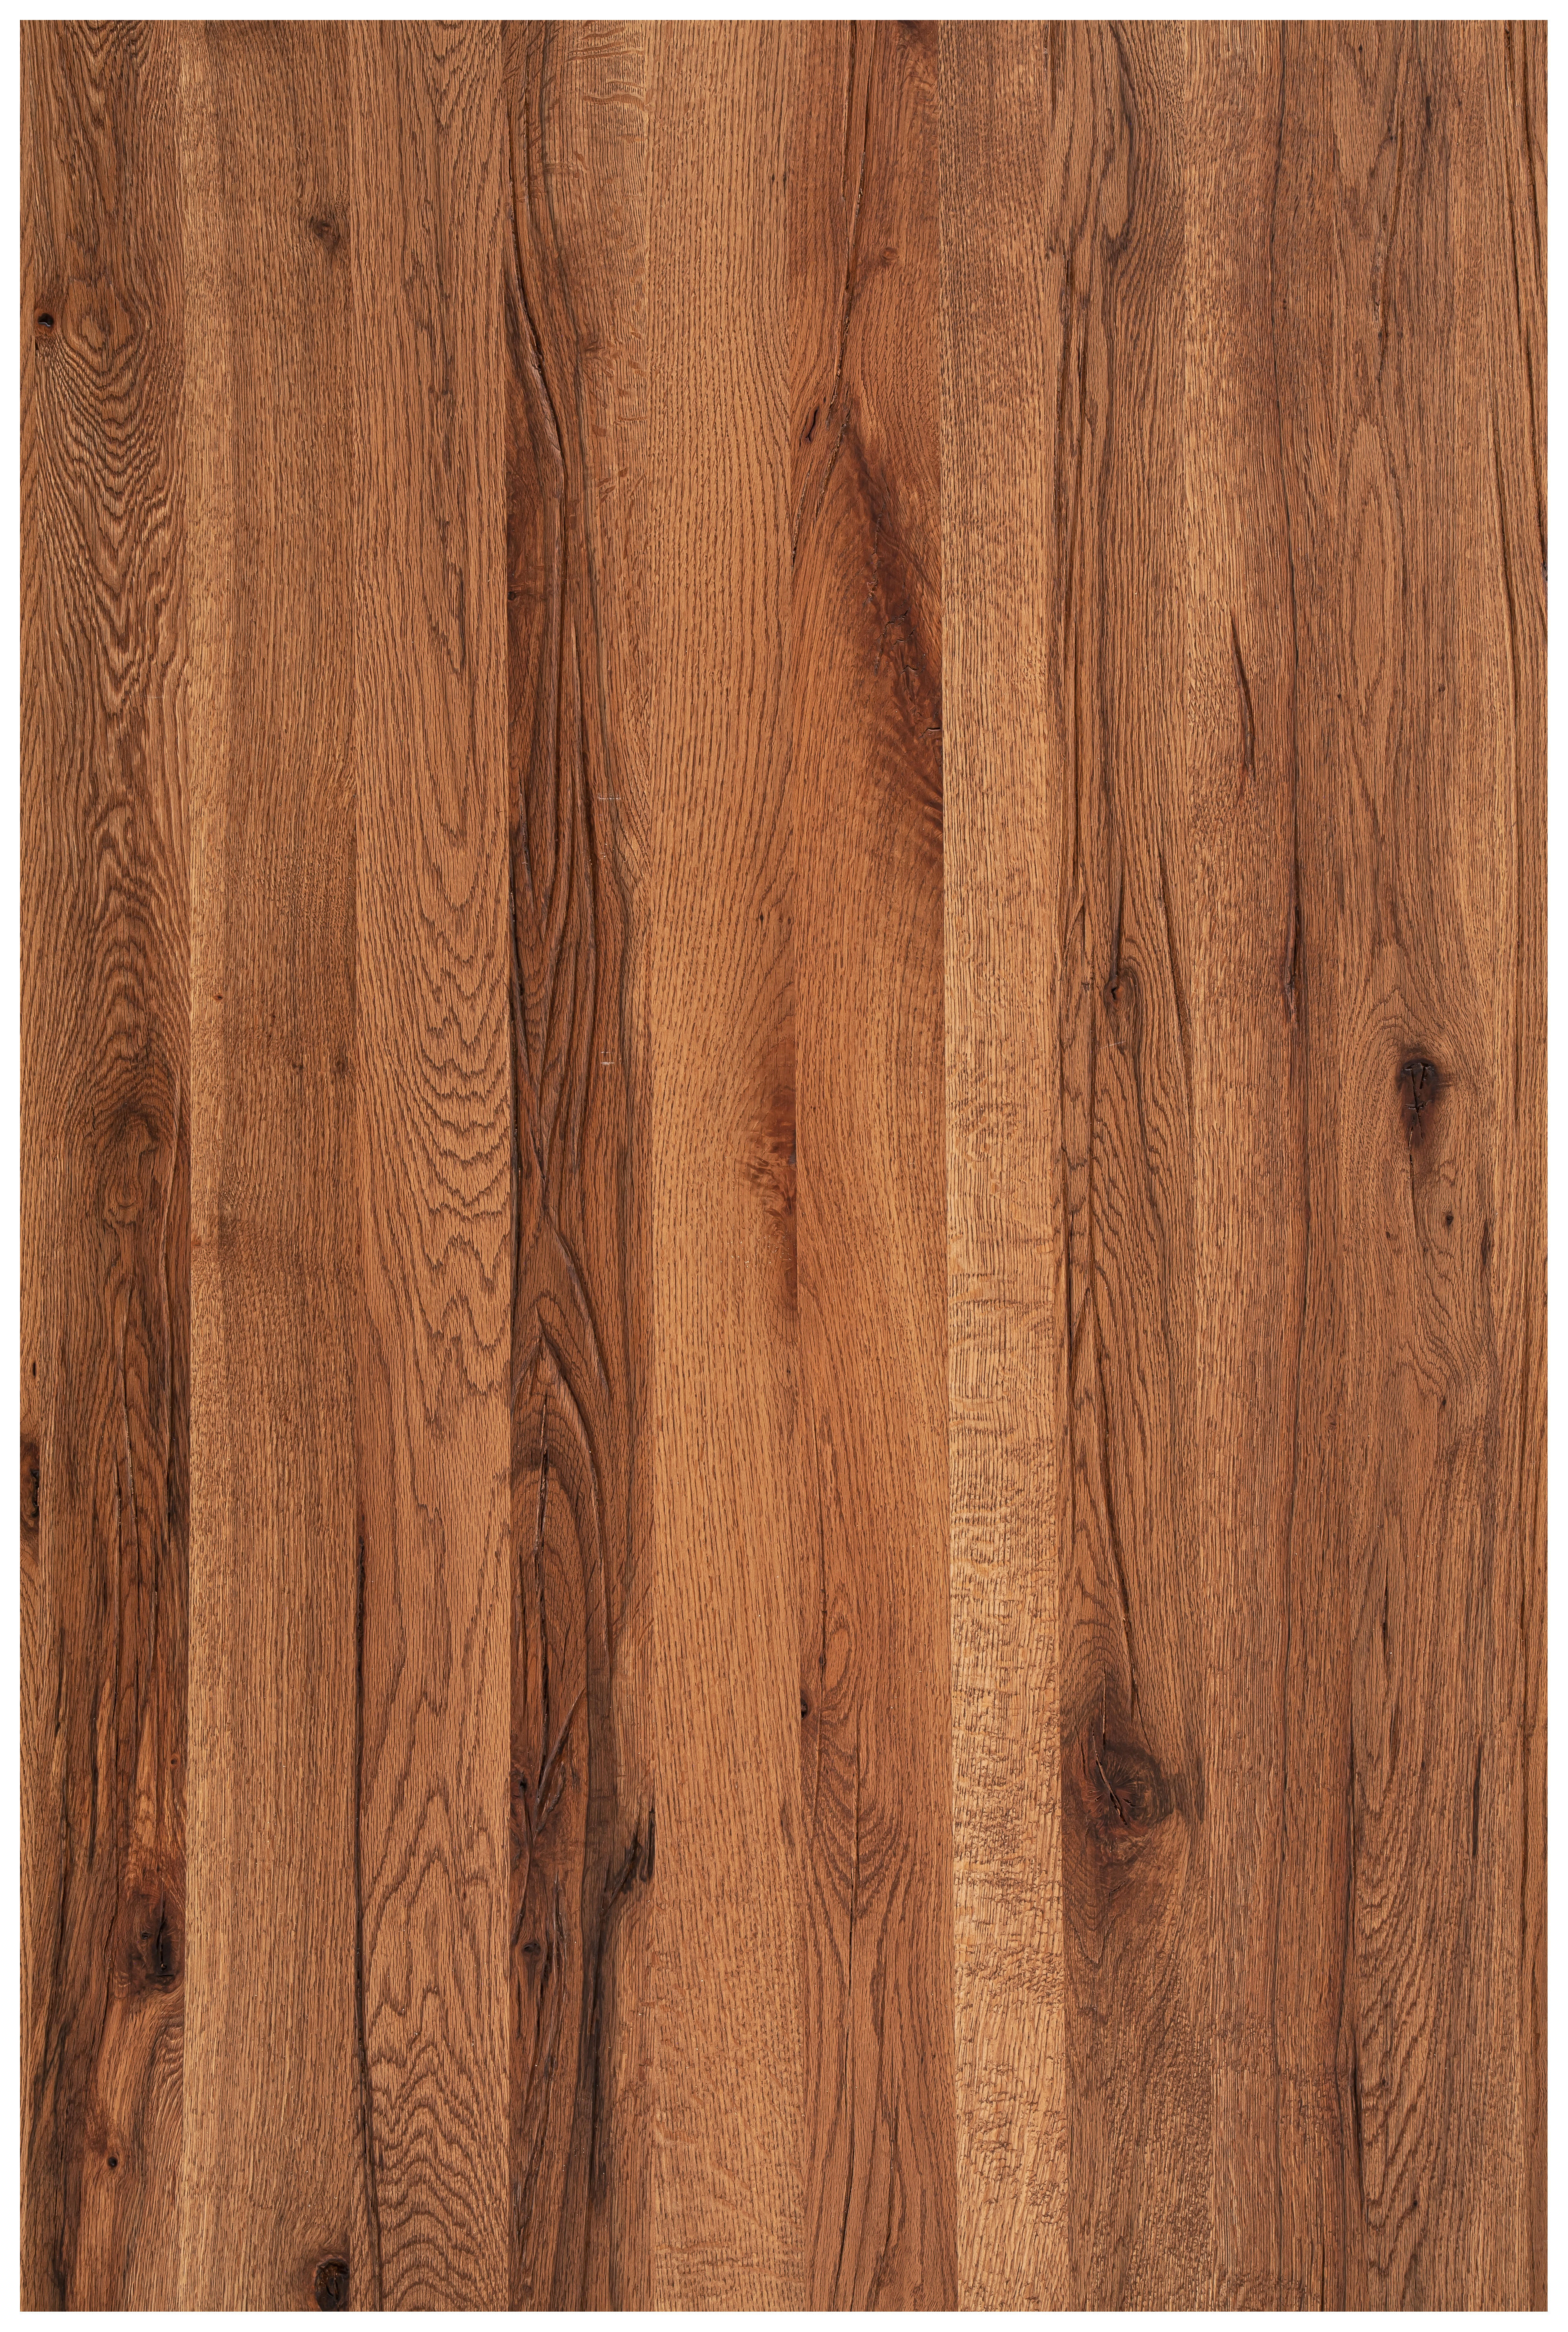 TISCHPLATTE 300/100/6 cm Eiche massiv Holz Eichefarben  - Eichefarben, Design, Holz (300/100/6cm) - Waldwelt